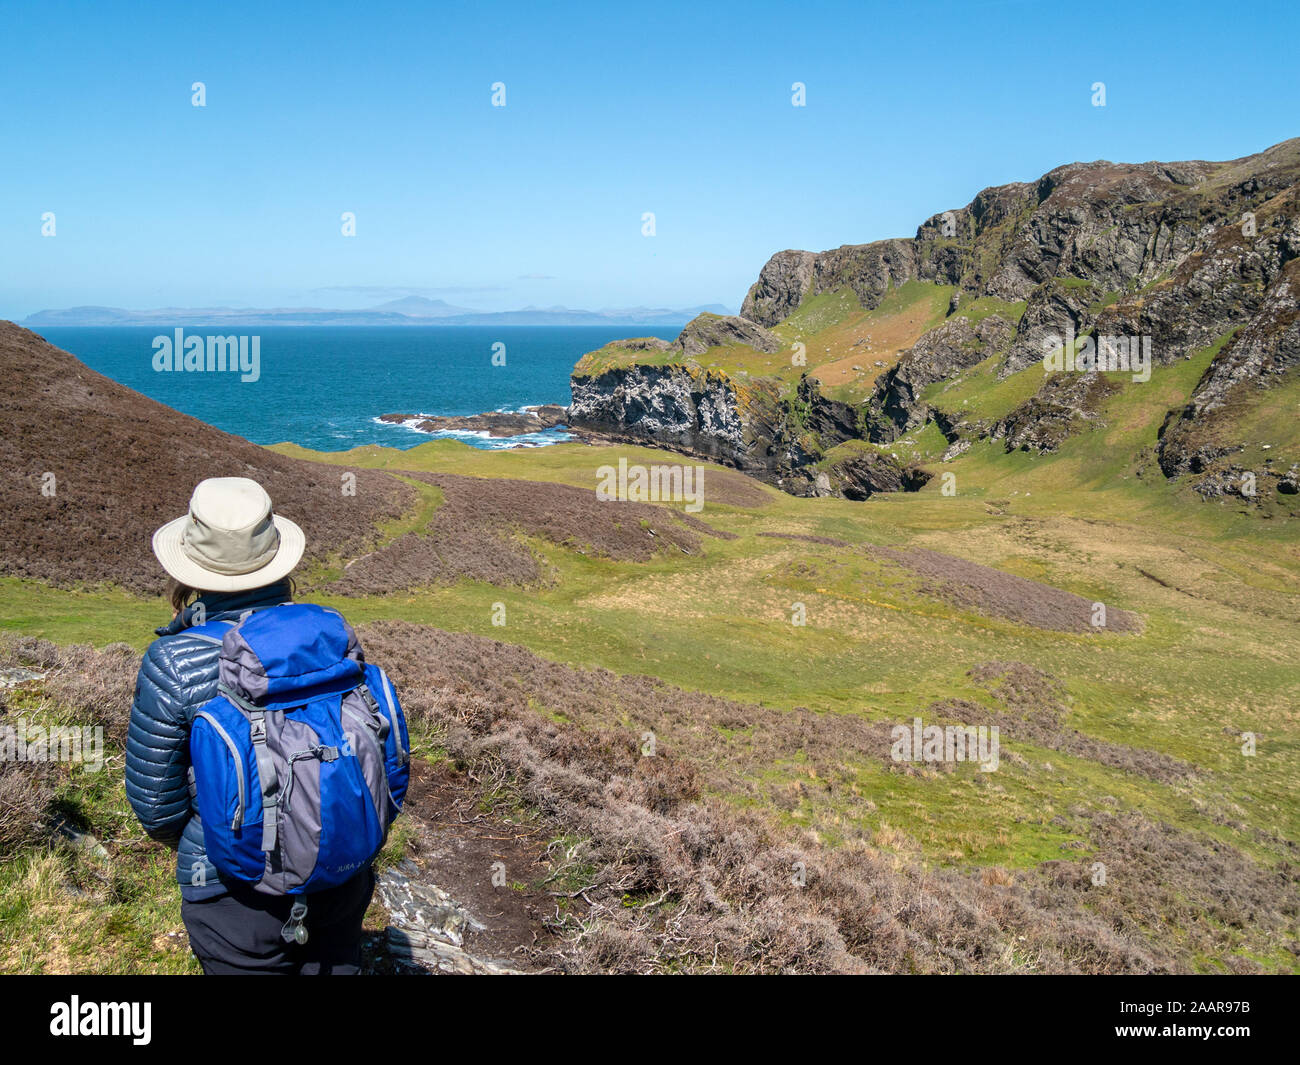 Les touristes à la recherche vers les falaises de la mer à Pig's Paradise,à l'île de Colonsay, Ecosse, Royaume-Uni Banque D'Images